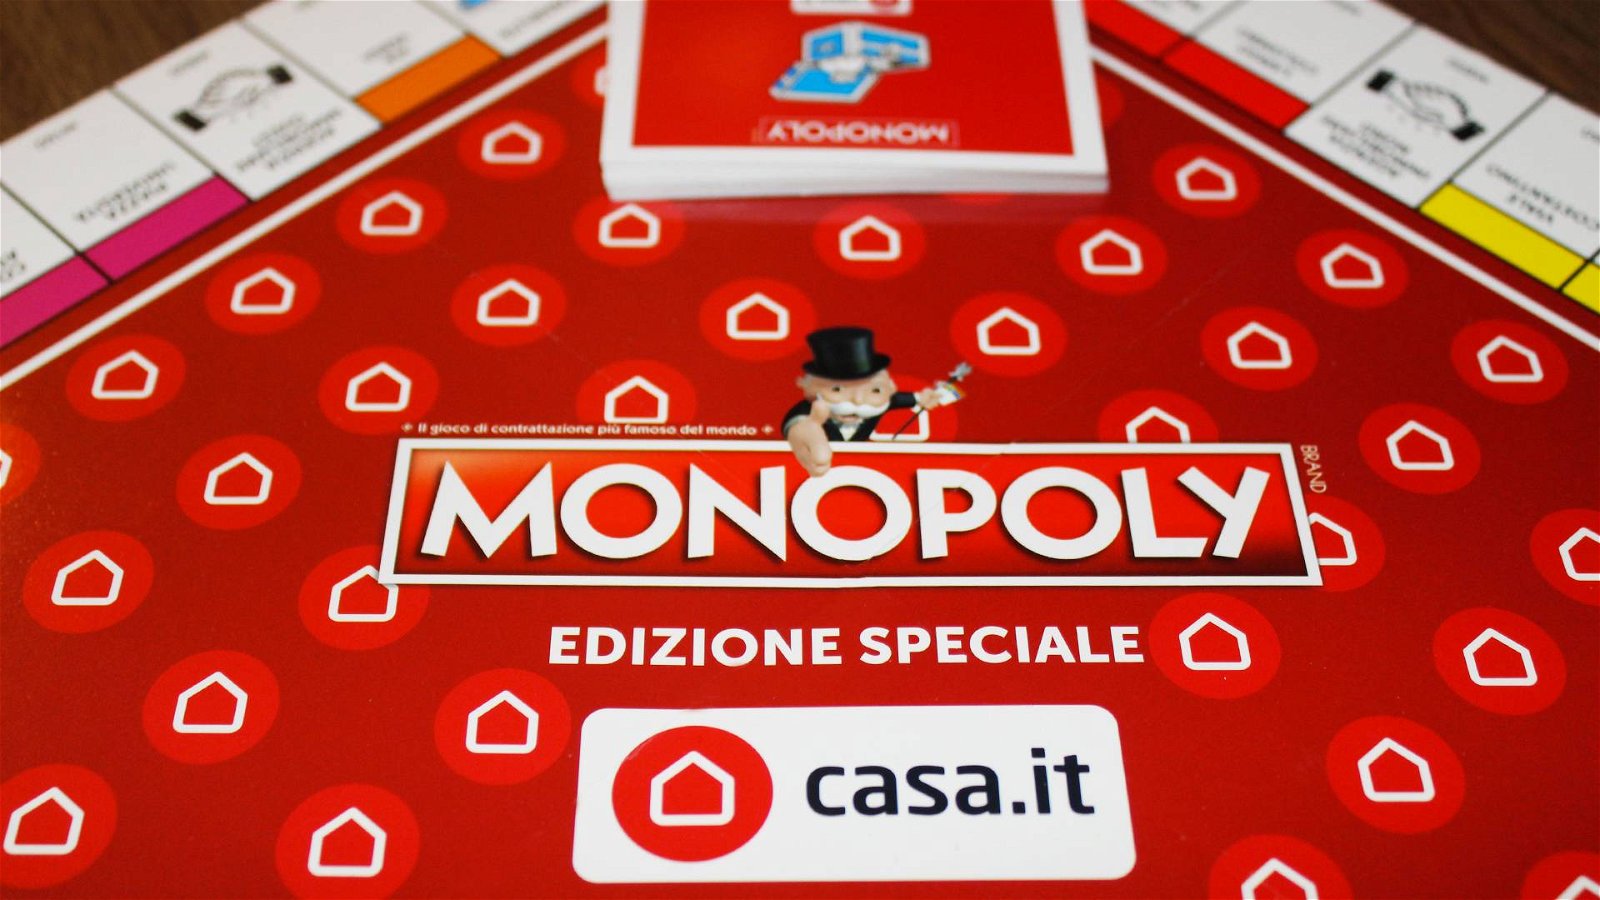 Immagine di Monopoly: in arrivo l'Edizione Speciale Casa.it